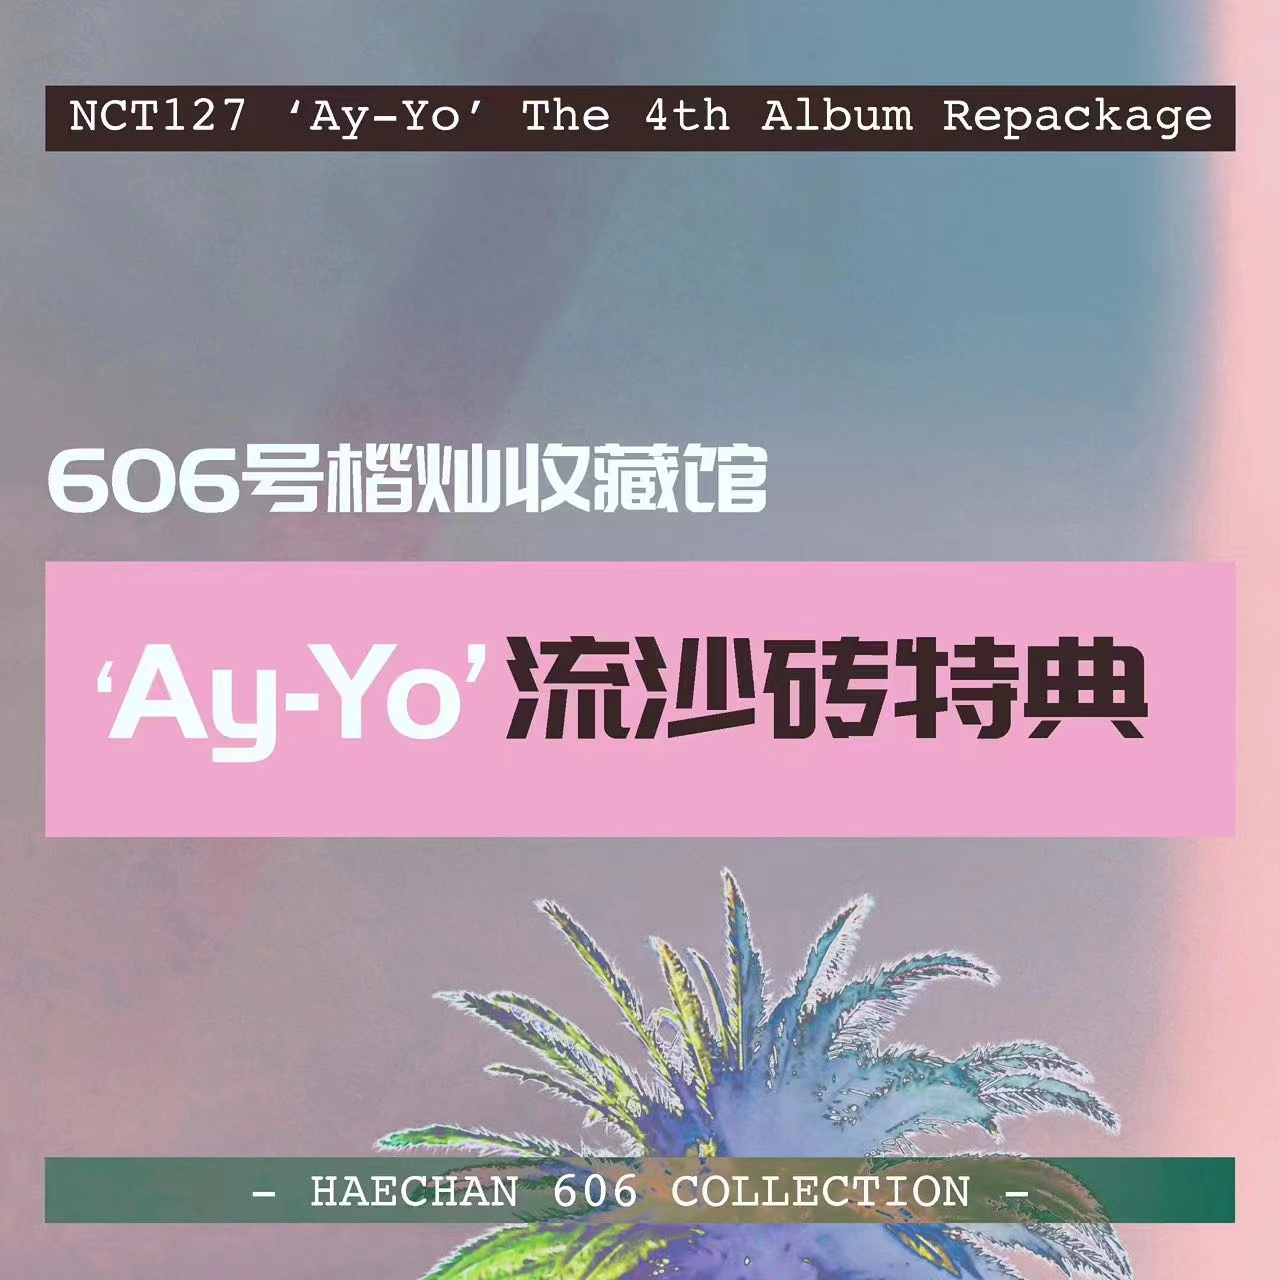 [全款 流沙砖特典 特典专] NCT 127 - The 4th Album Repackage [Ay-Yo]_606号楷灿收藏馆